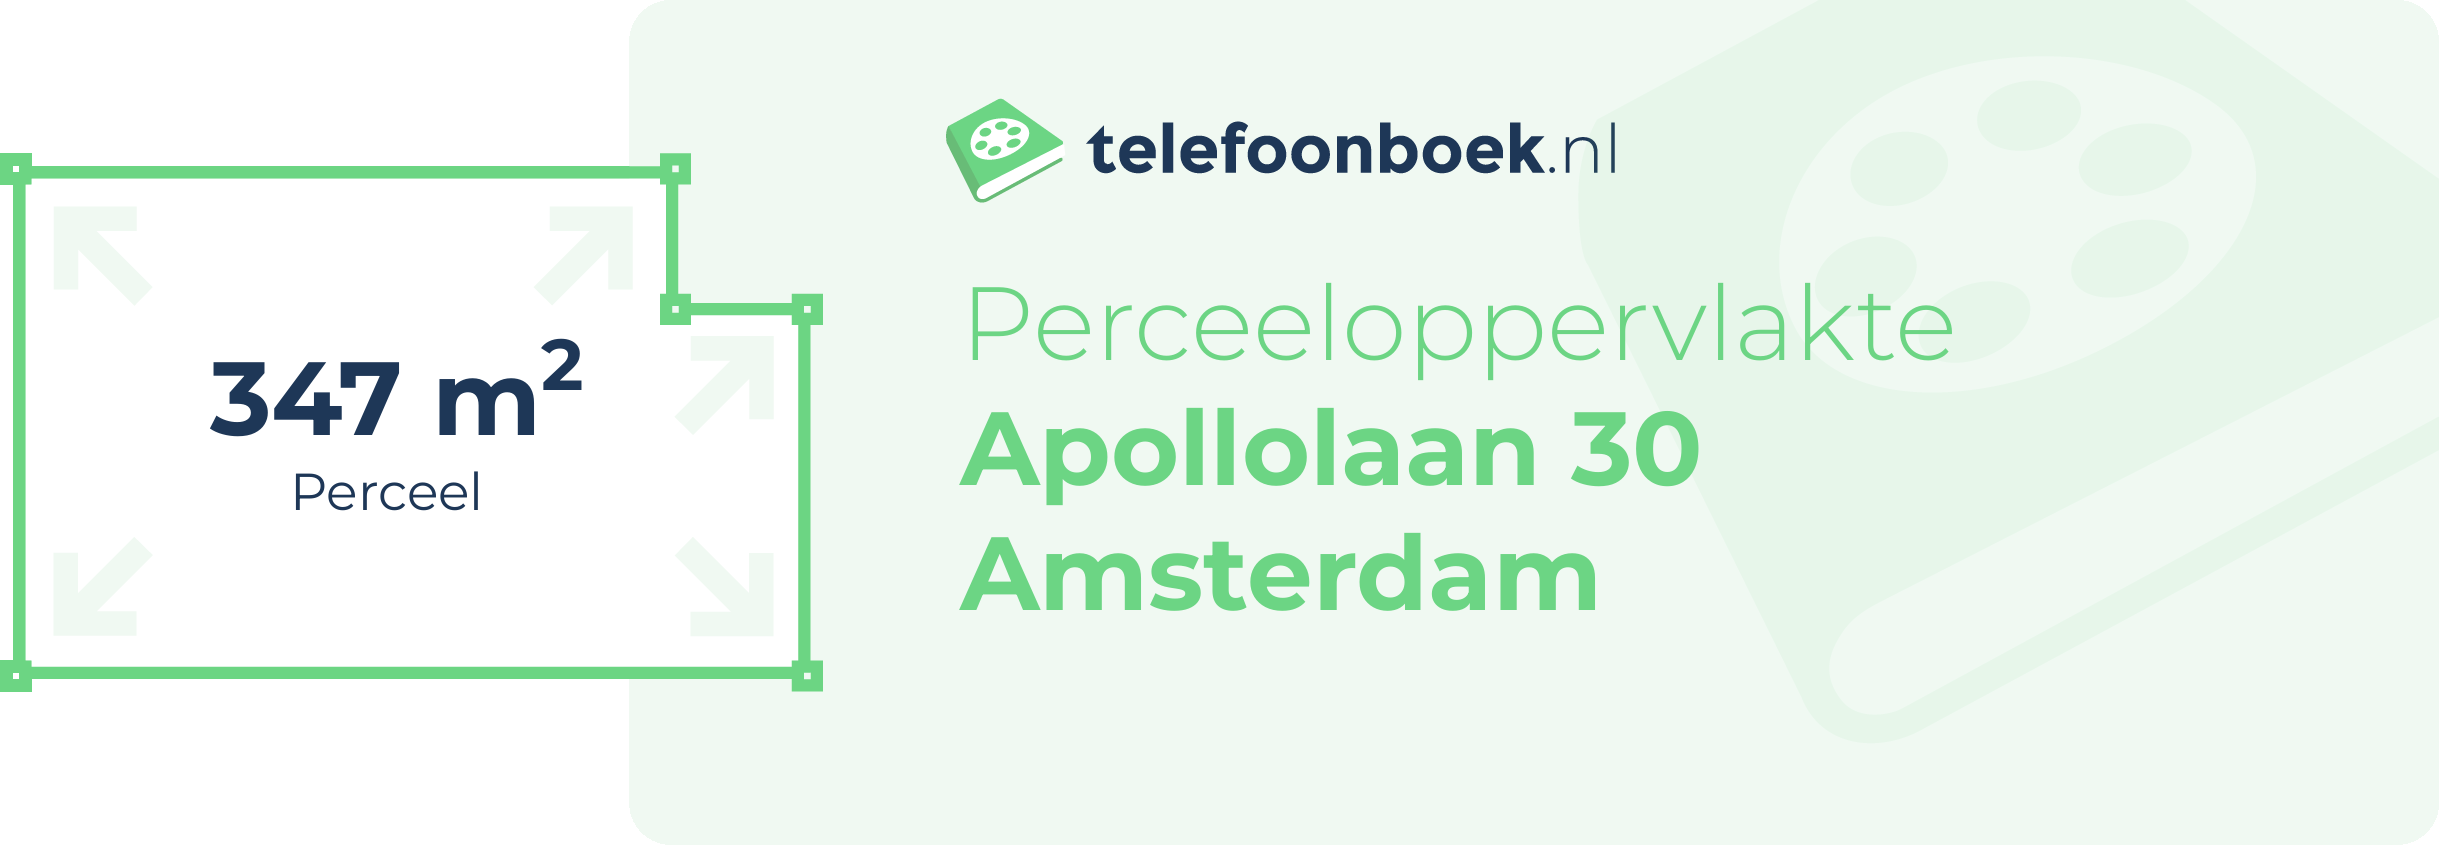 Perceeloppervlakte Apollolaan 30 Amsterdam